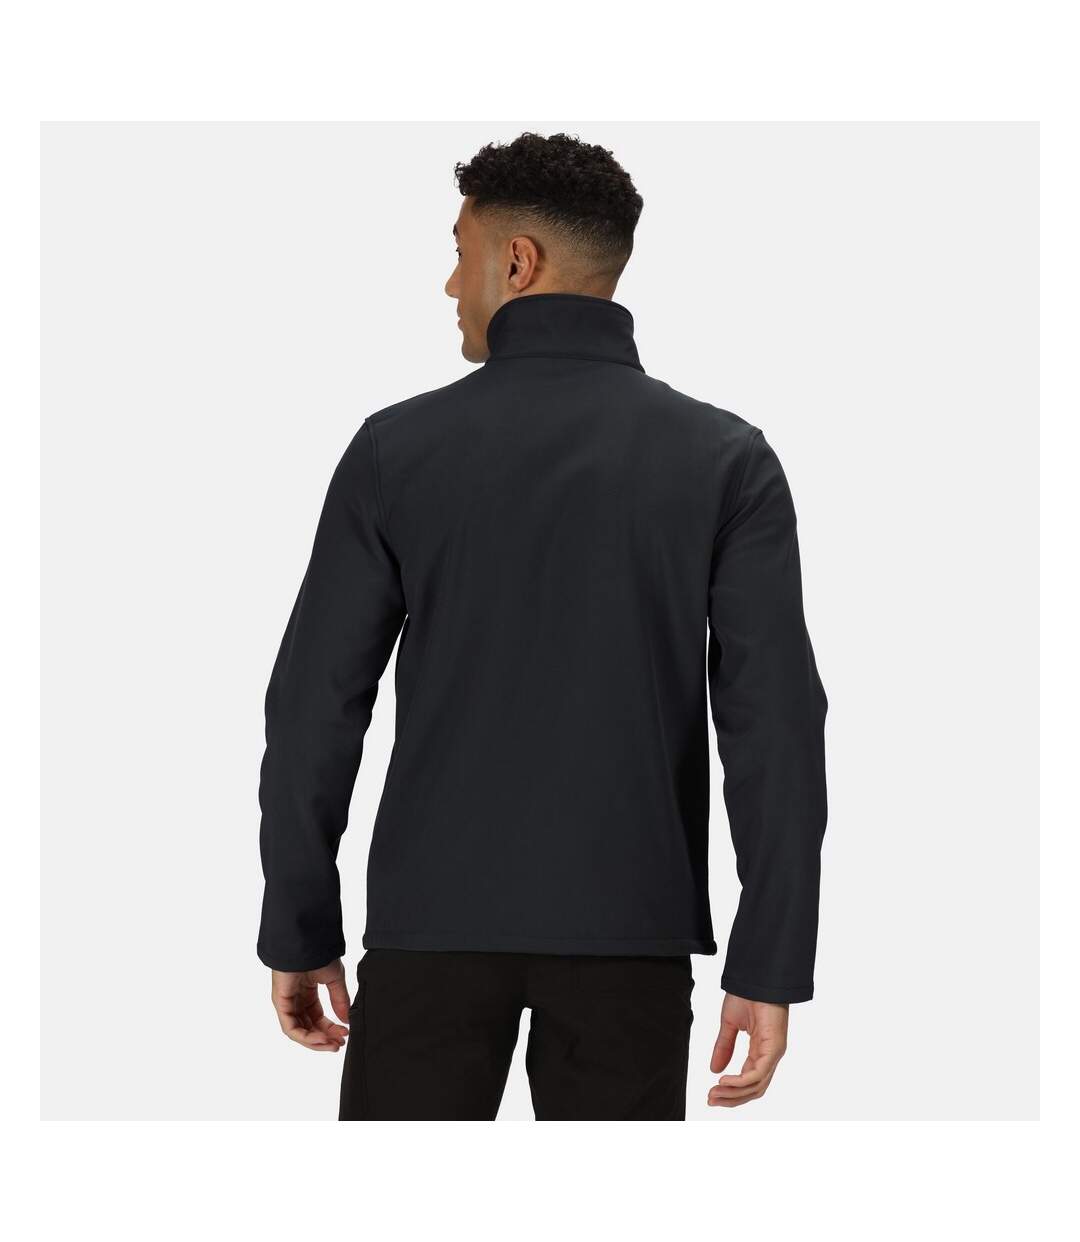 Regatta Mens Cera V Wind Resistant Soft Shell Jacket (Black) - UTRG6259